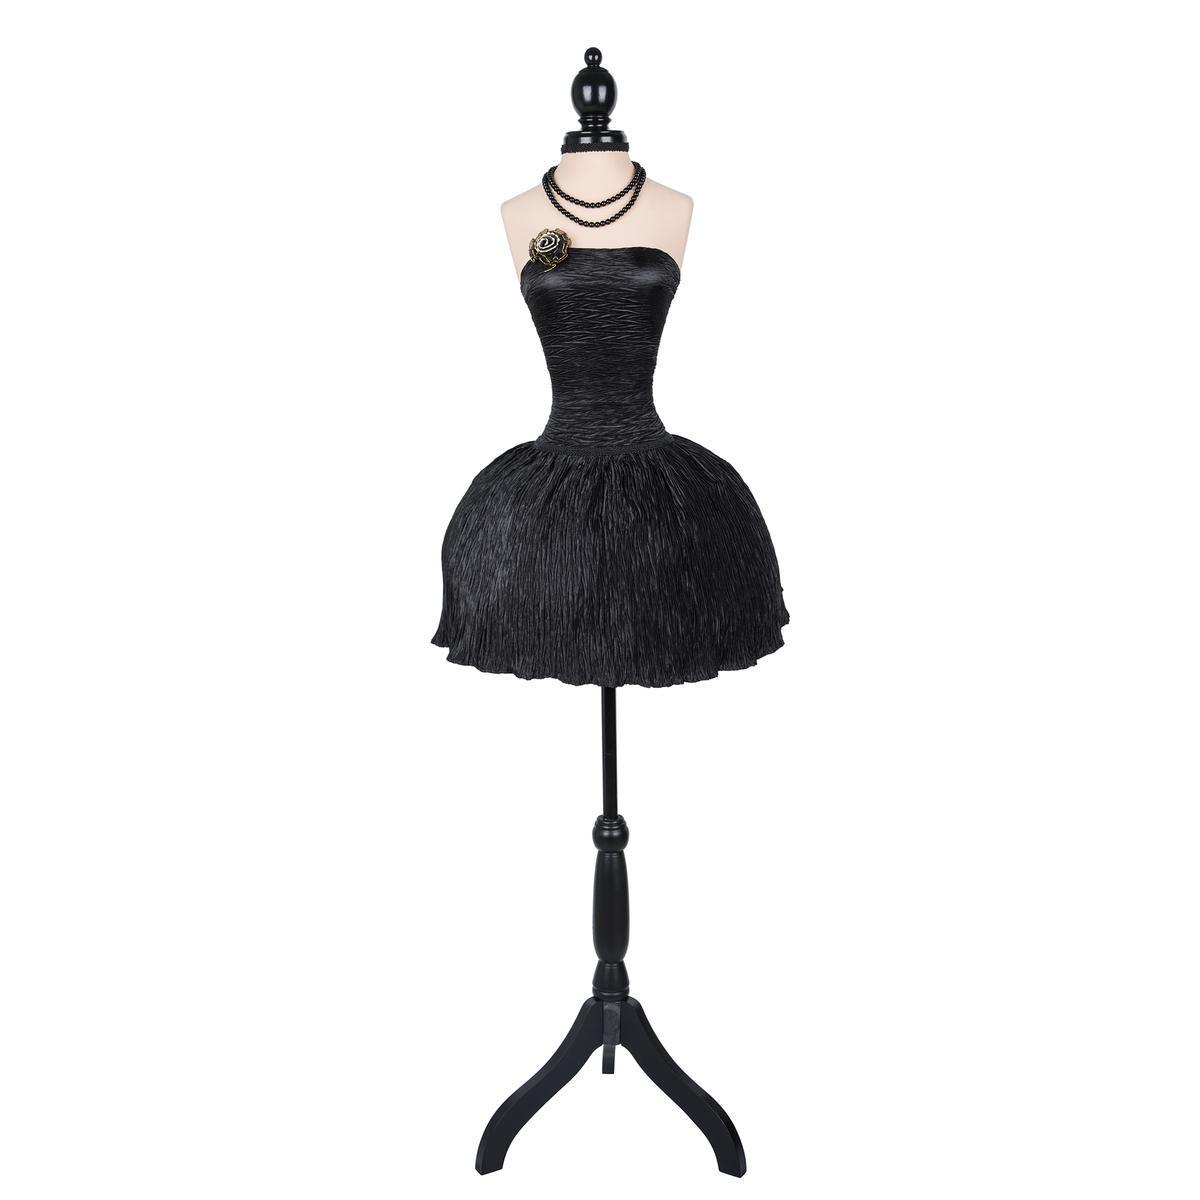 Mannequin petite robe noire - ø 37 x H 160 cm